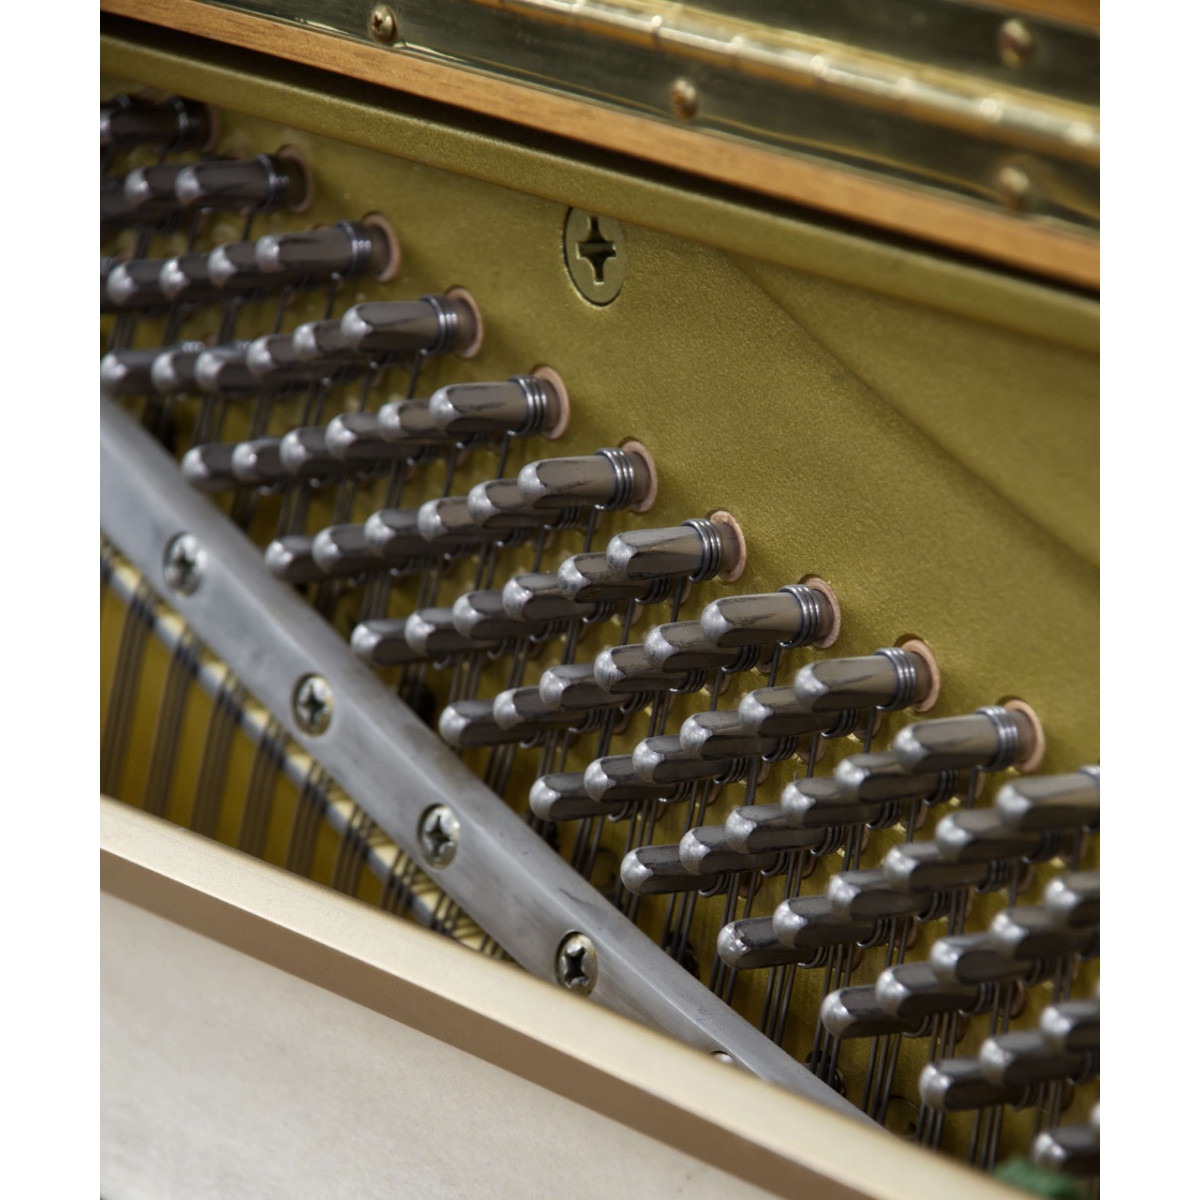 Yamaha U1 N Klavier, Holzoberfläche Kirschbaum, gebraucht kaufen bei Pianelli, Ansicht: Stimmwirbel